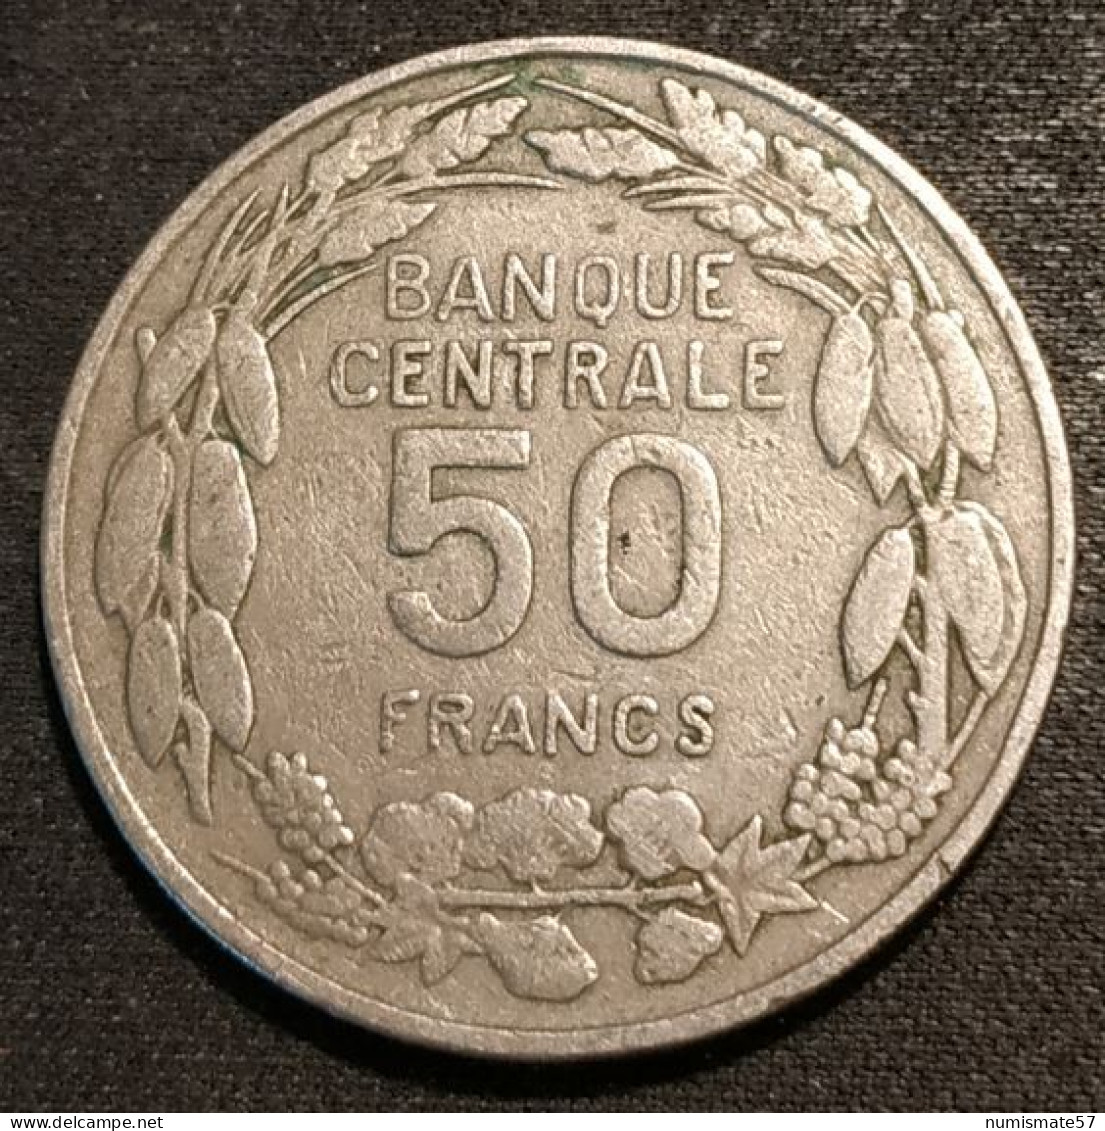 CAMEROUN - 50 FRANCS 1960 - KM 13 - ( 1er JANVIER 1960 - PAIX TRAVAIL PATRIE ) - Camerún